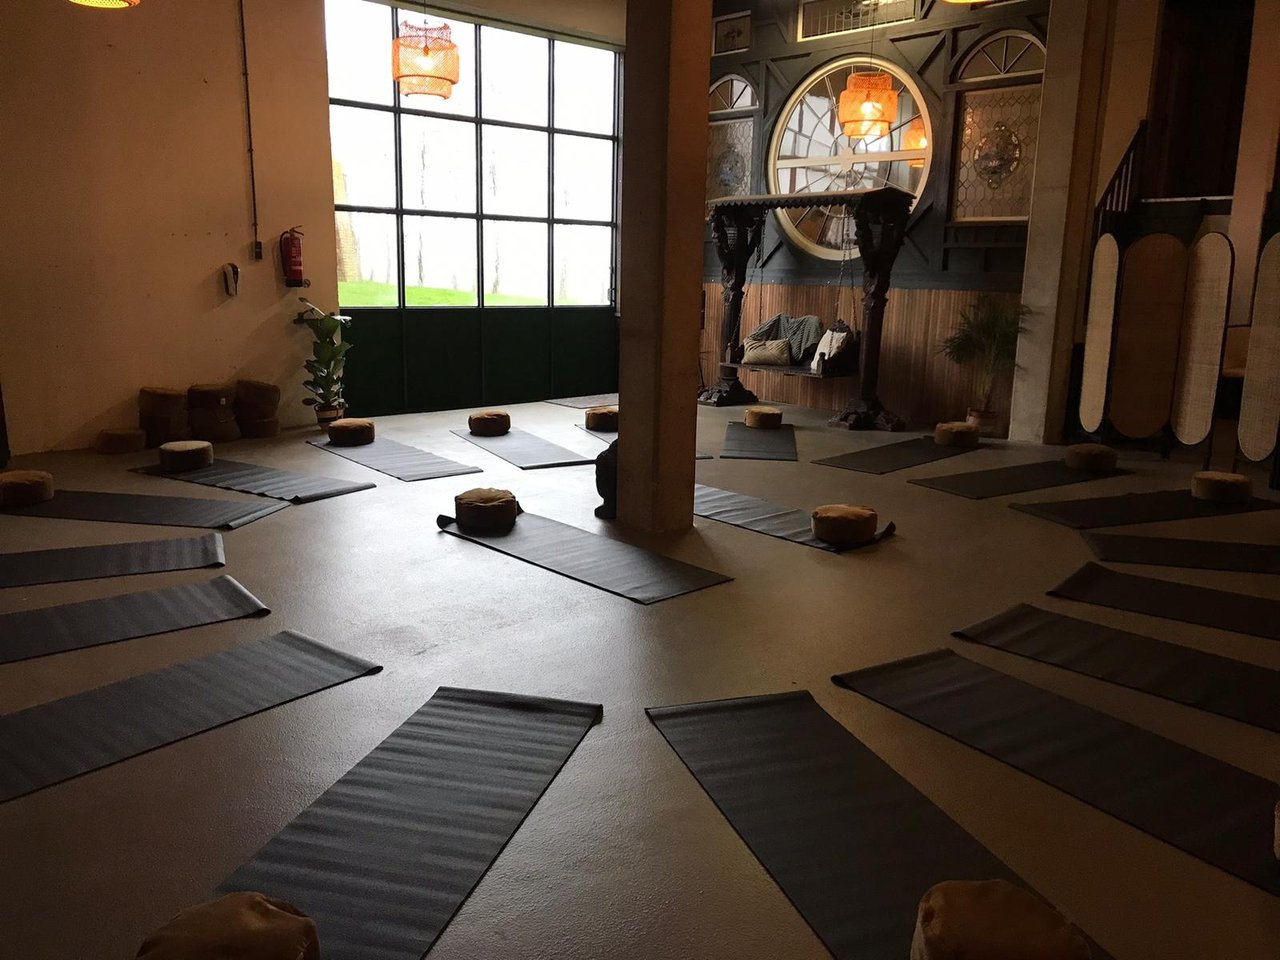 gezamenlijke ruimte, die flexibel in te delen is, bijvoorbeeld als yoga studio, maar hier kan ook een beamer/zithoek/andere opstelling gemaakt worden